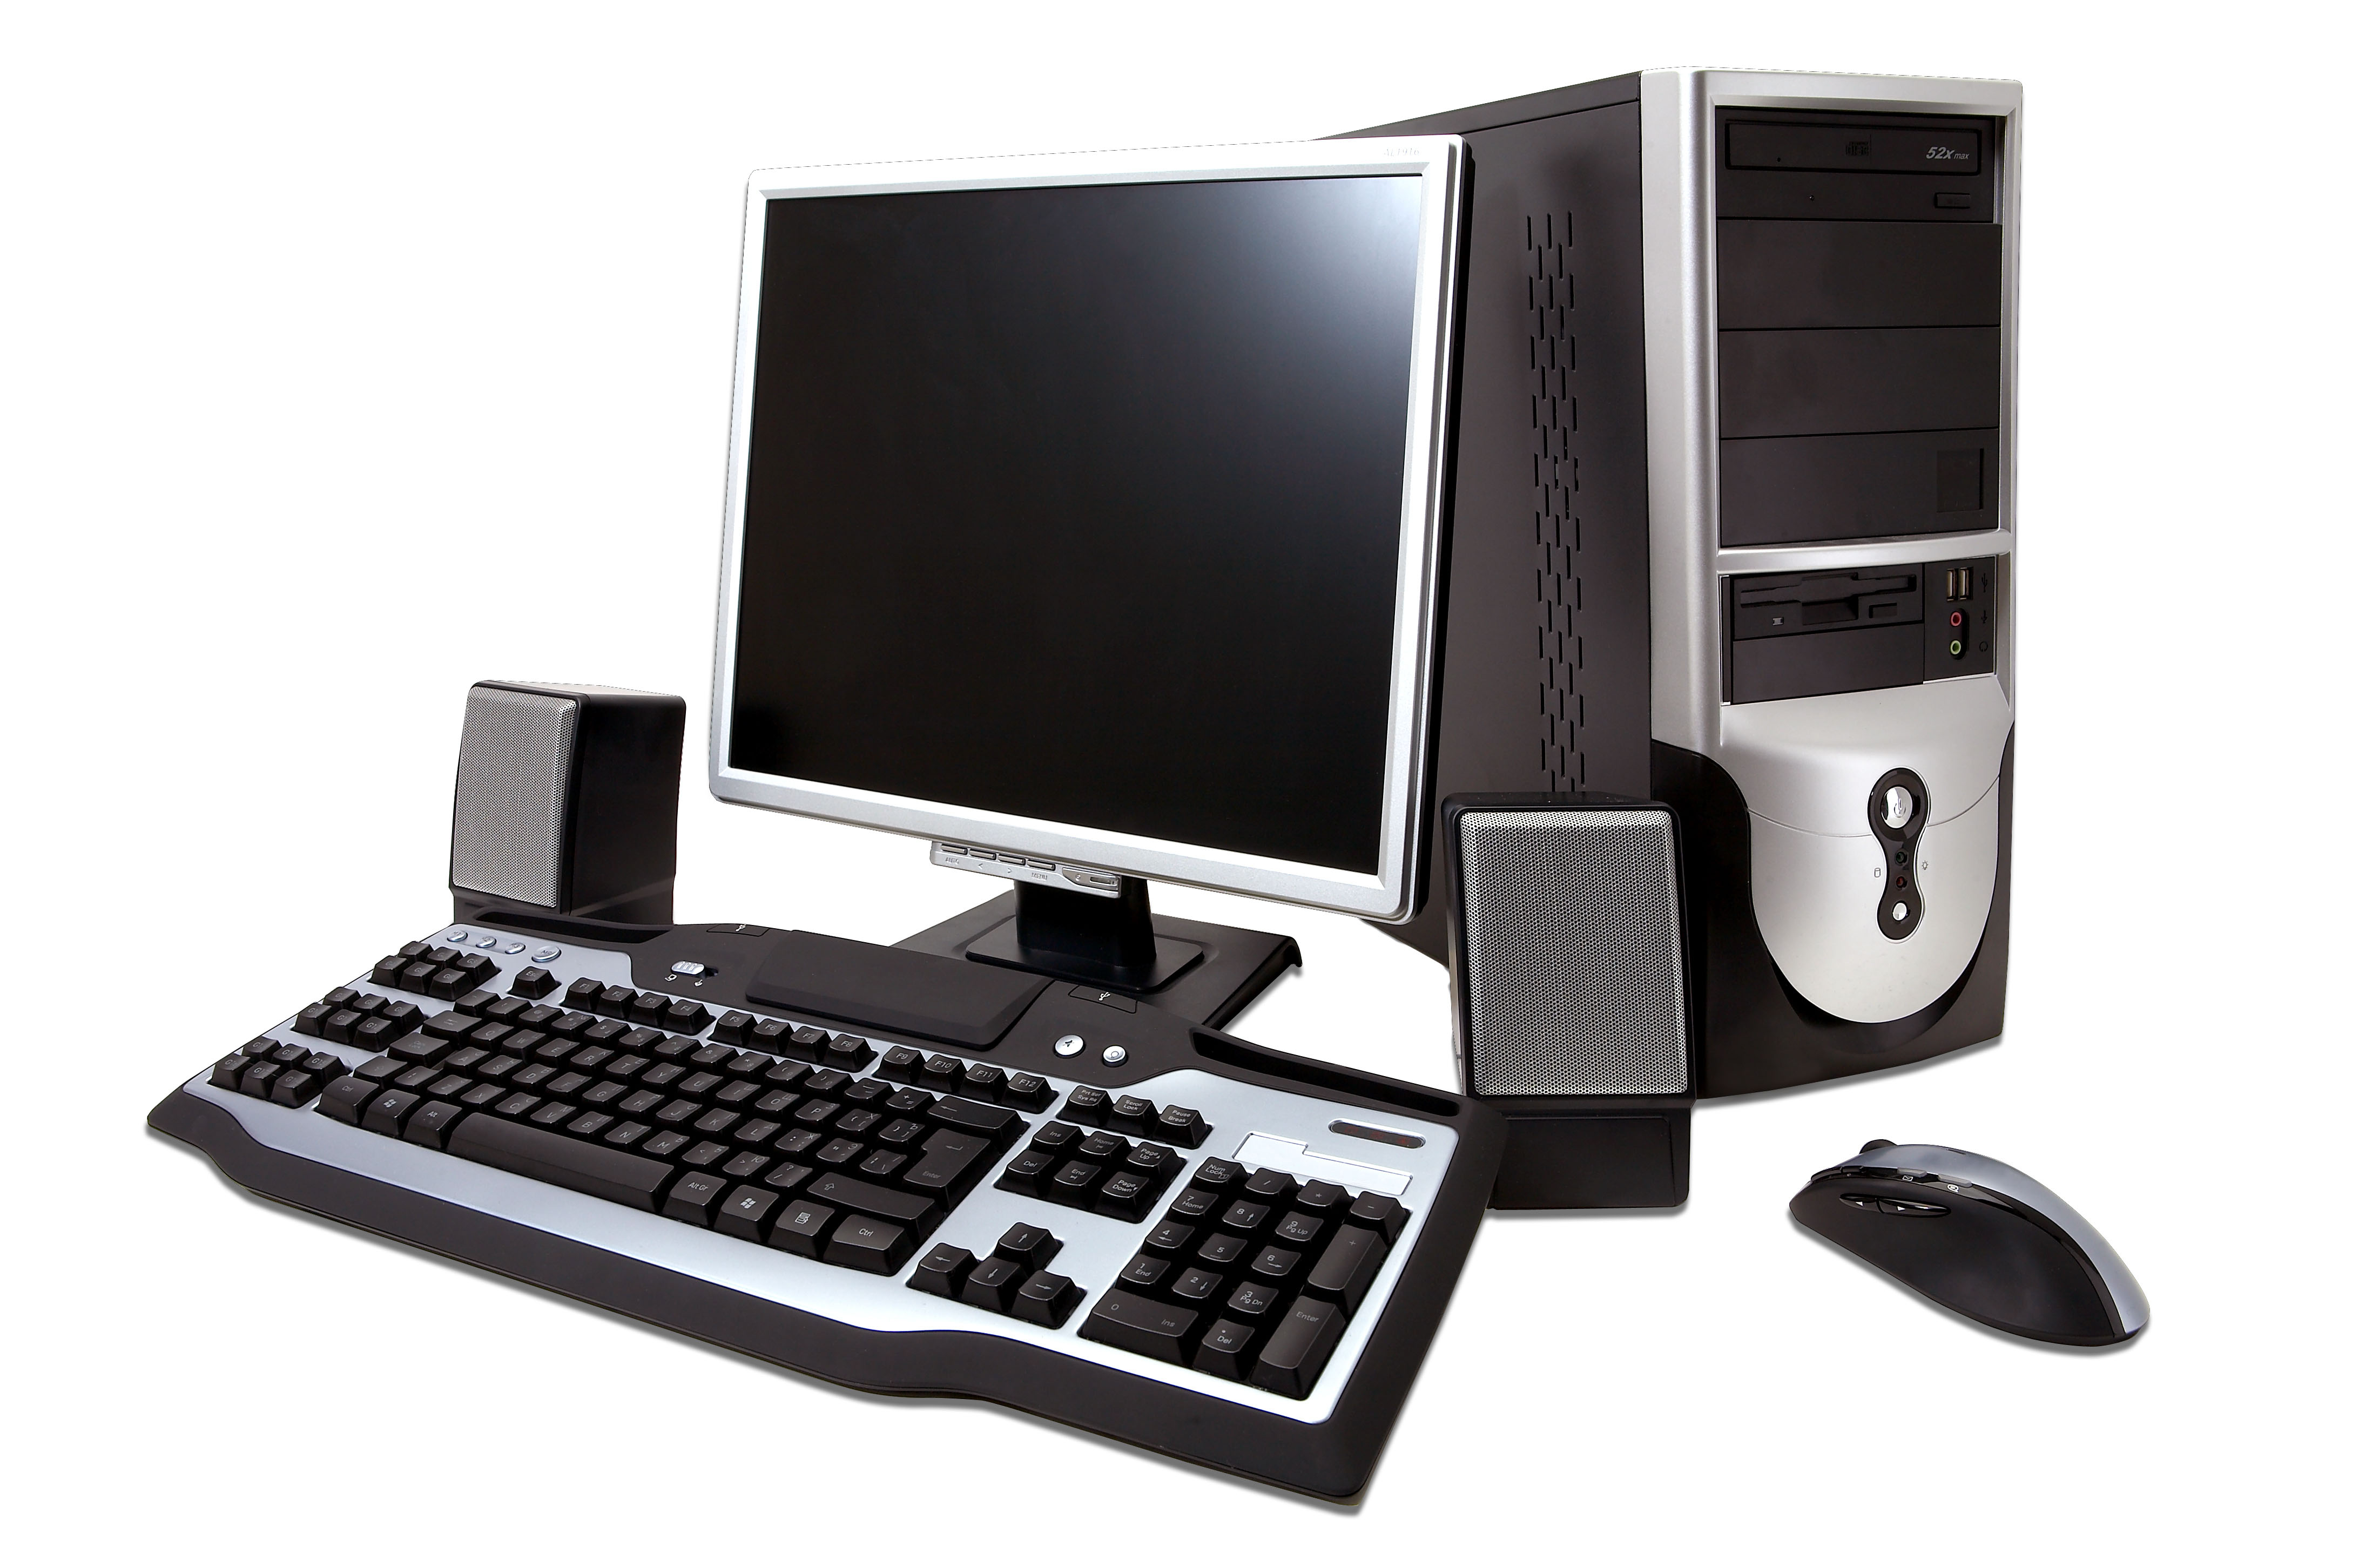 Популярные модели компьютеров. Системный блок (компьютерная техника i3-3220). Компьютер (сист. Блок, монитор TFT 27 Acer Black). Инв.. ПК мышь клавиатура монитор 2021. Персональныйпомпьютер.